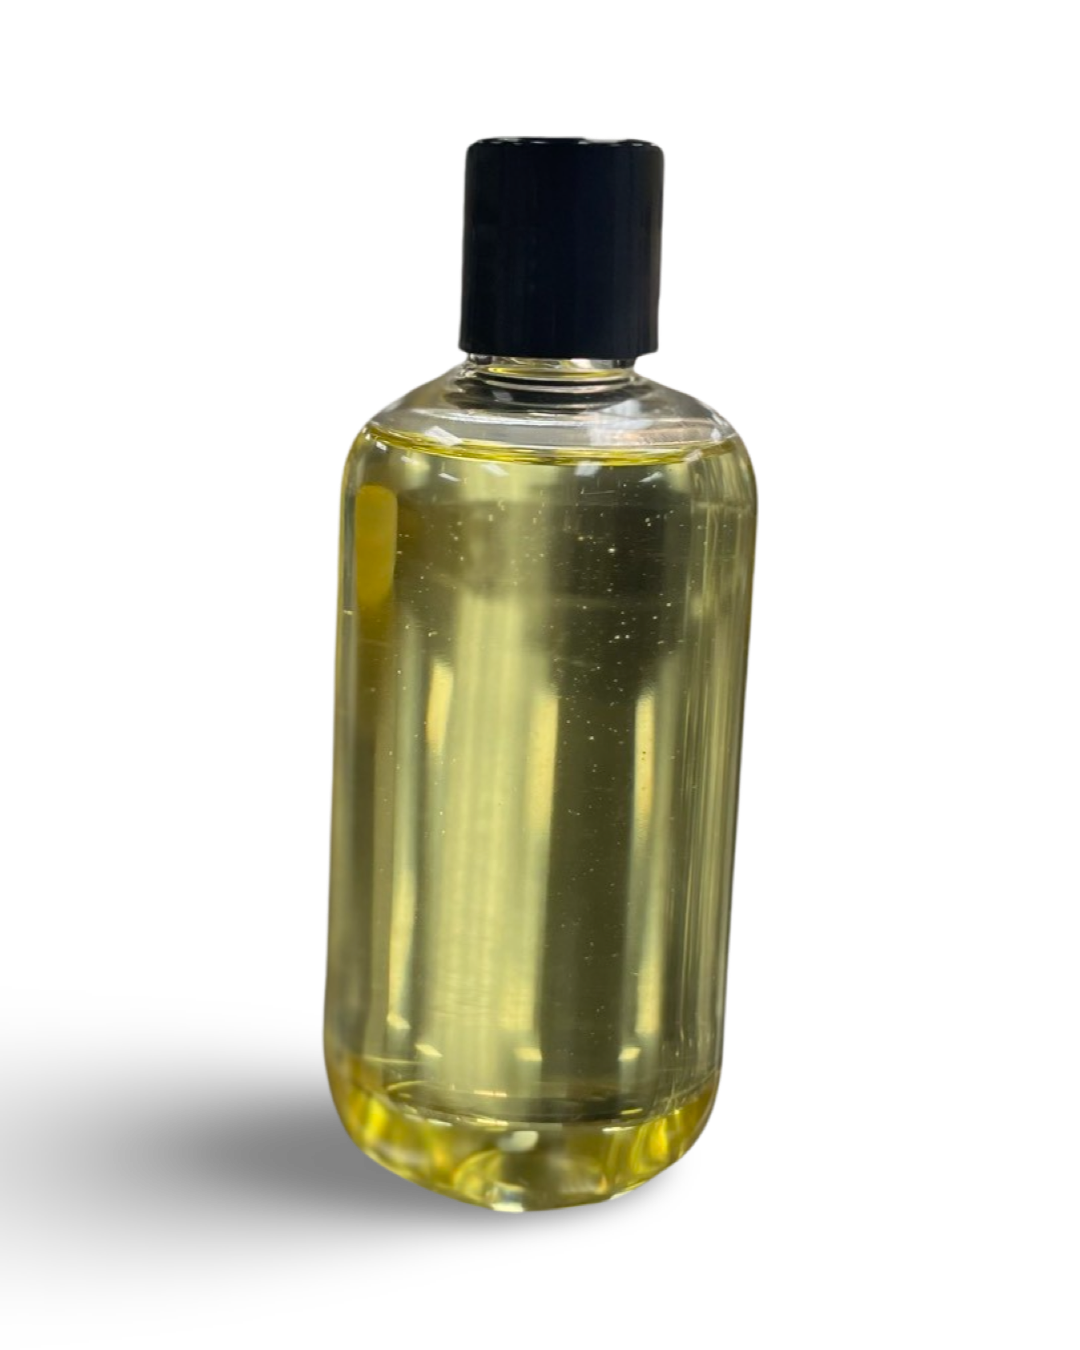 Lavender and Lemon Body Oil